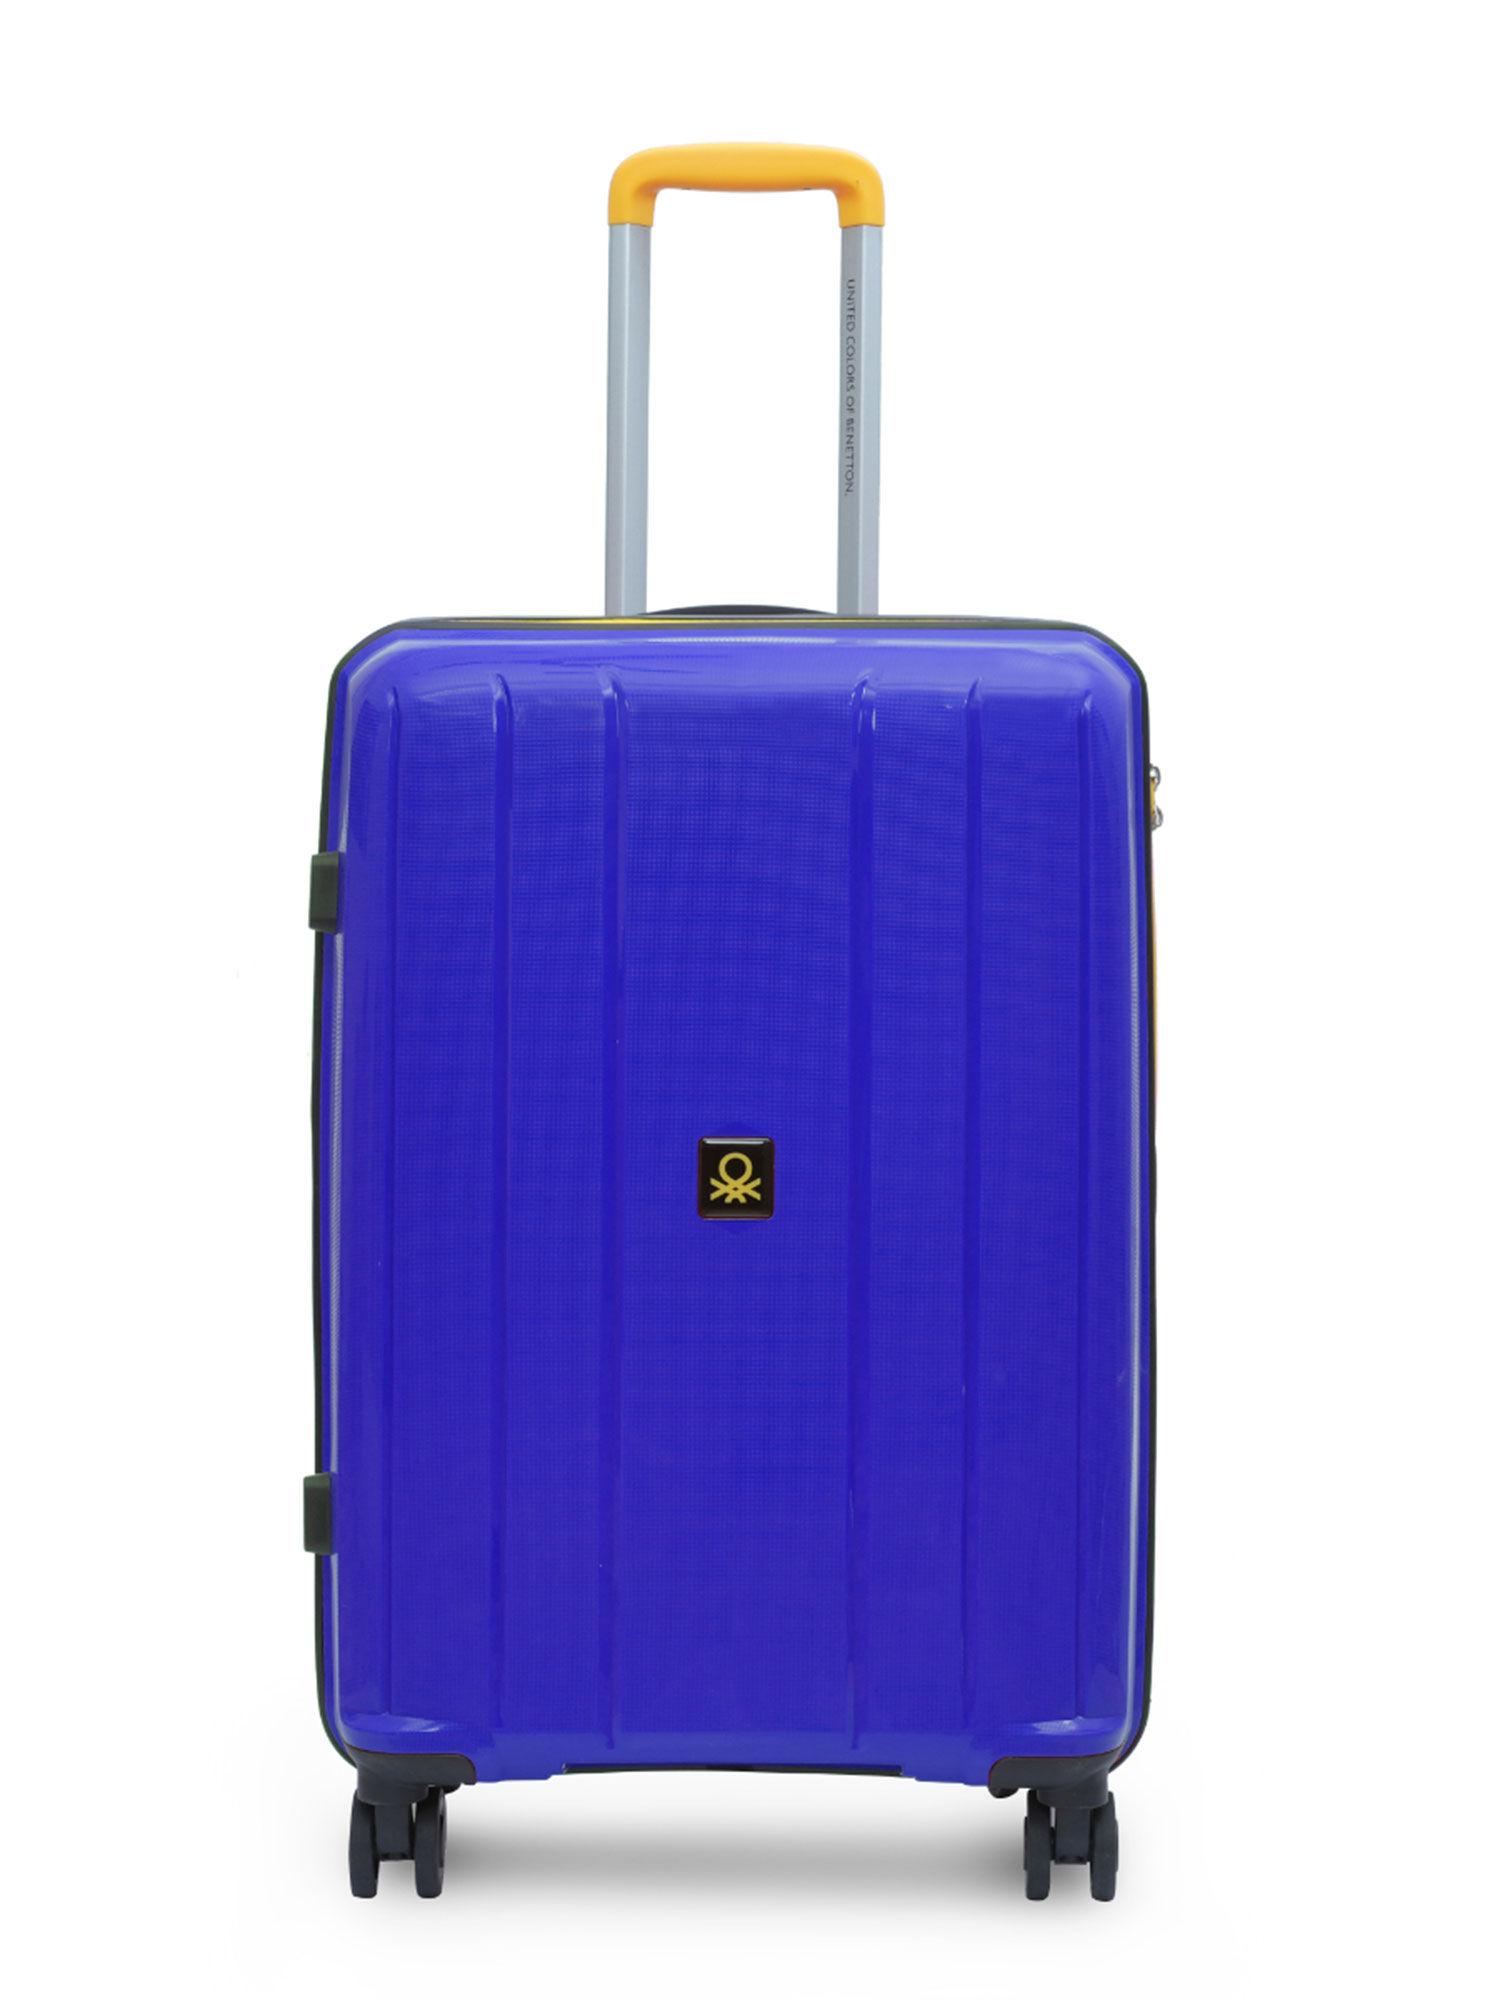 wayfarer unisex hard luggage bag- blue